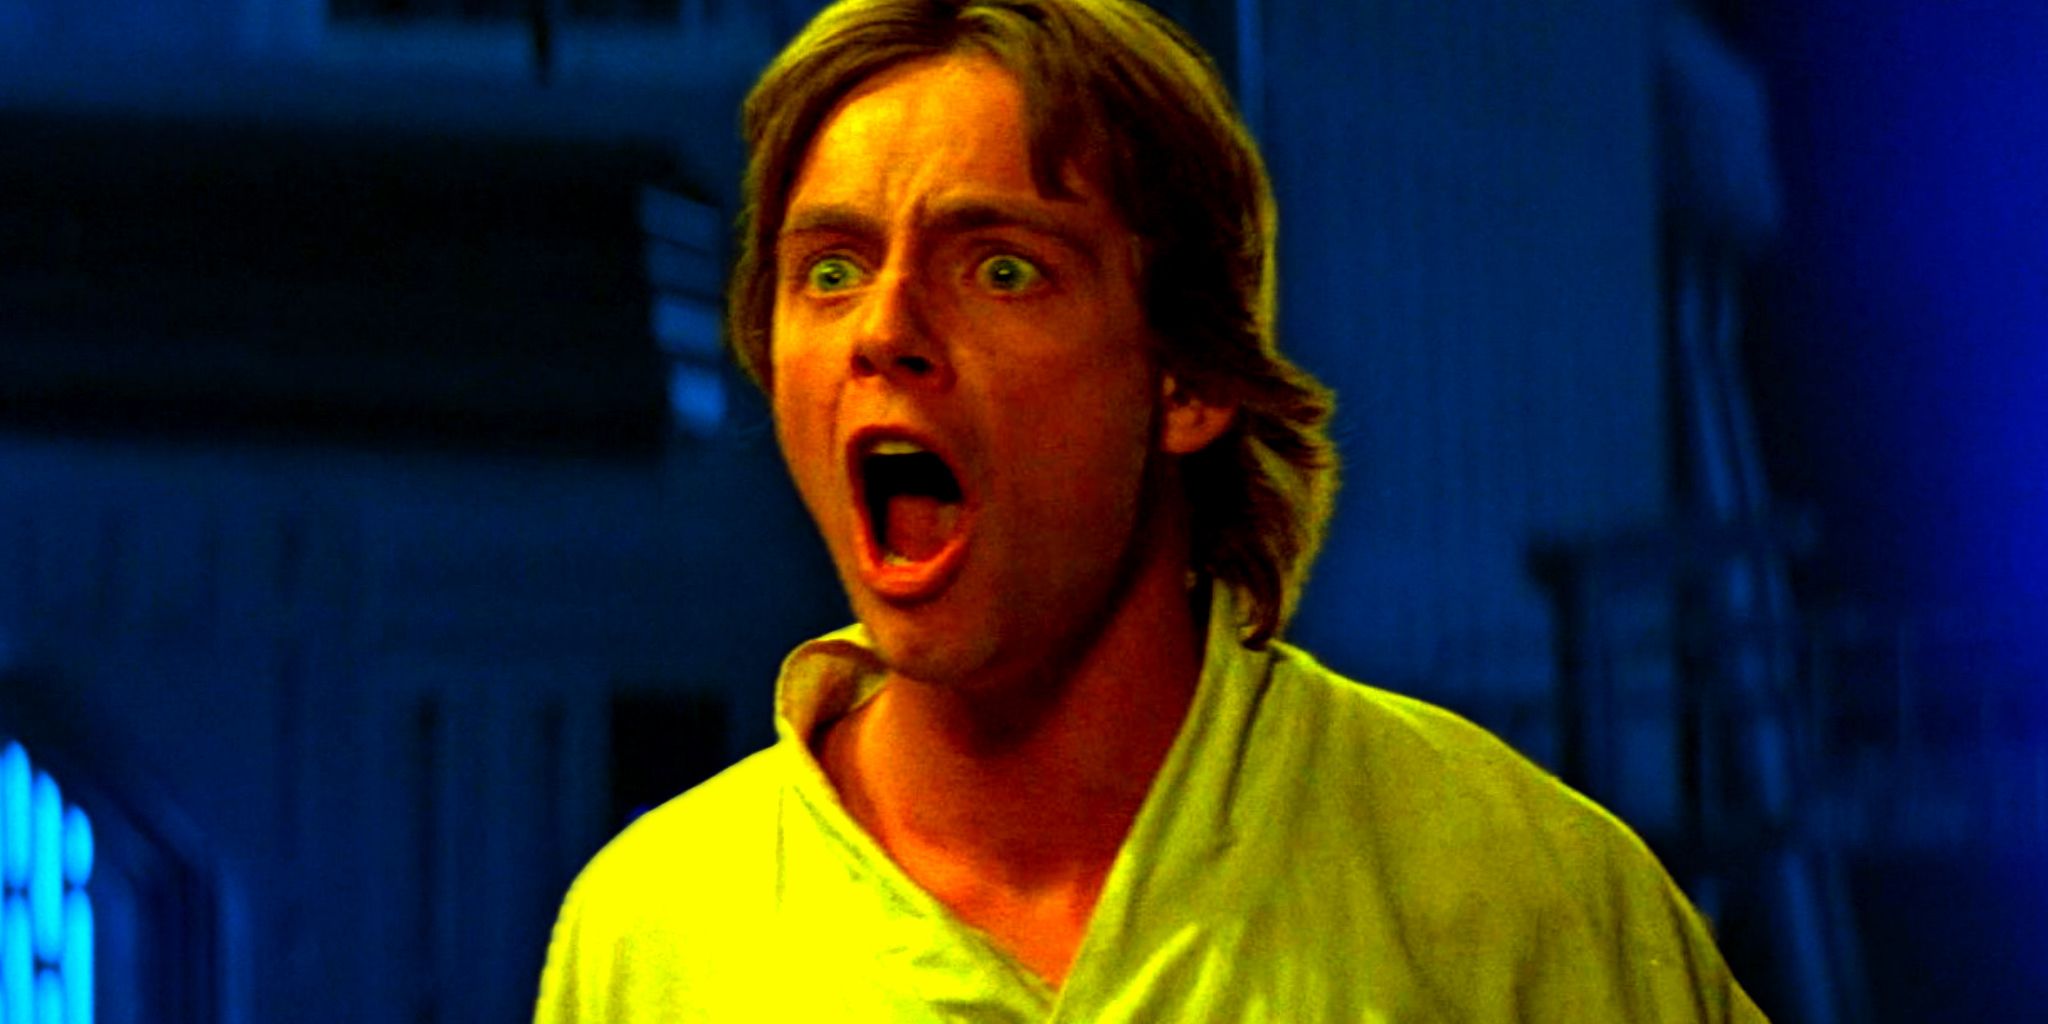 Luke Skywalker screams 